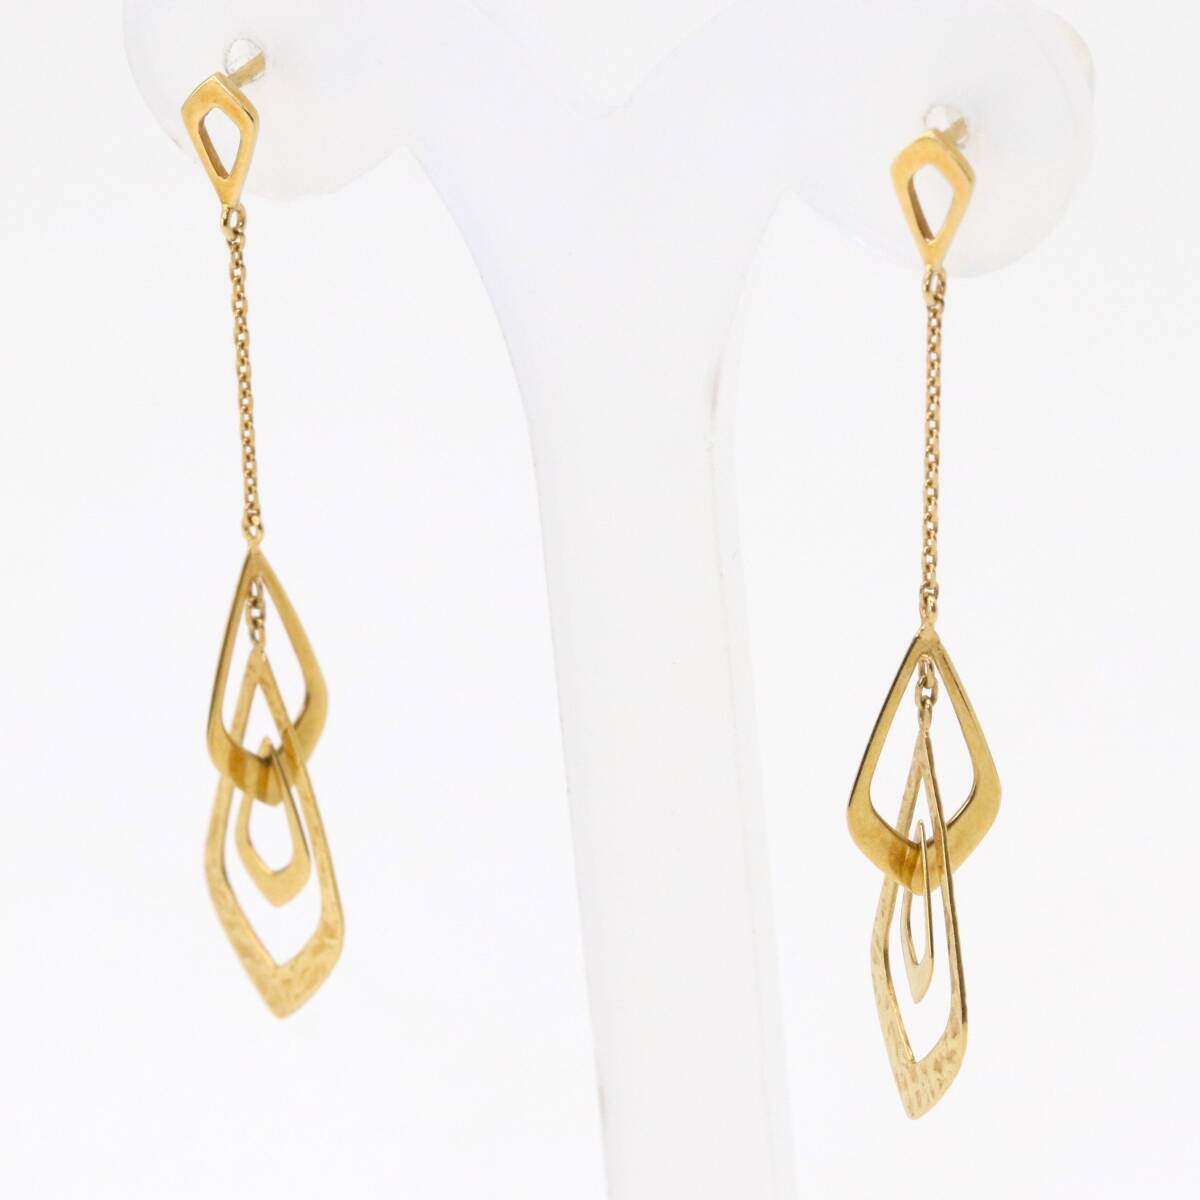  Star Jewelry earrings K18 chain earrings tech s tea - Gold STAR JEWELRY